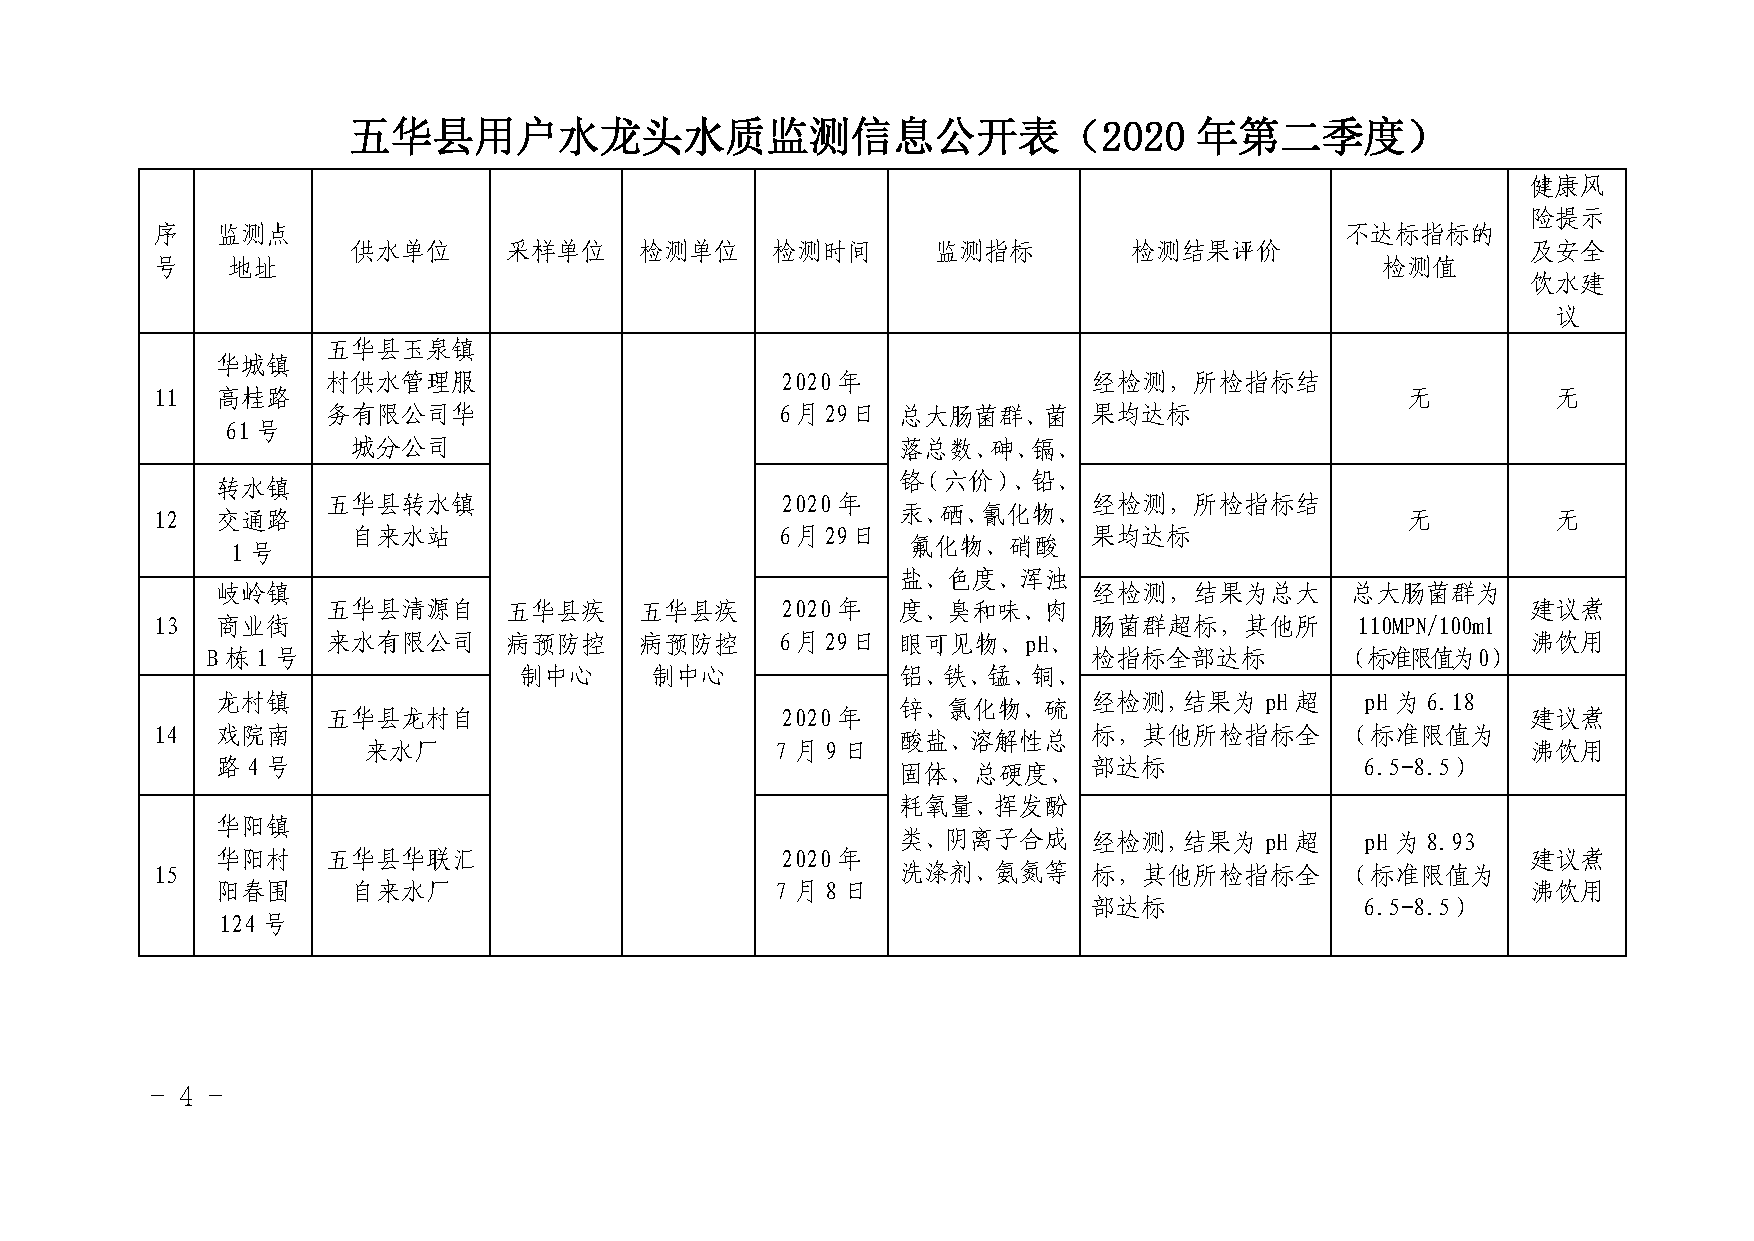 关于五华县2020年第二季度用户水龙头水质监测结果的报告_页面_4.png